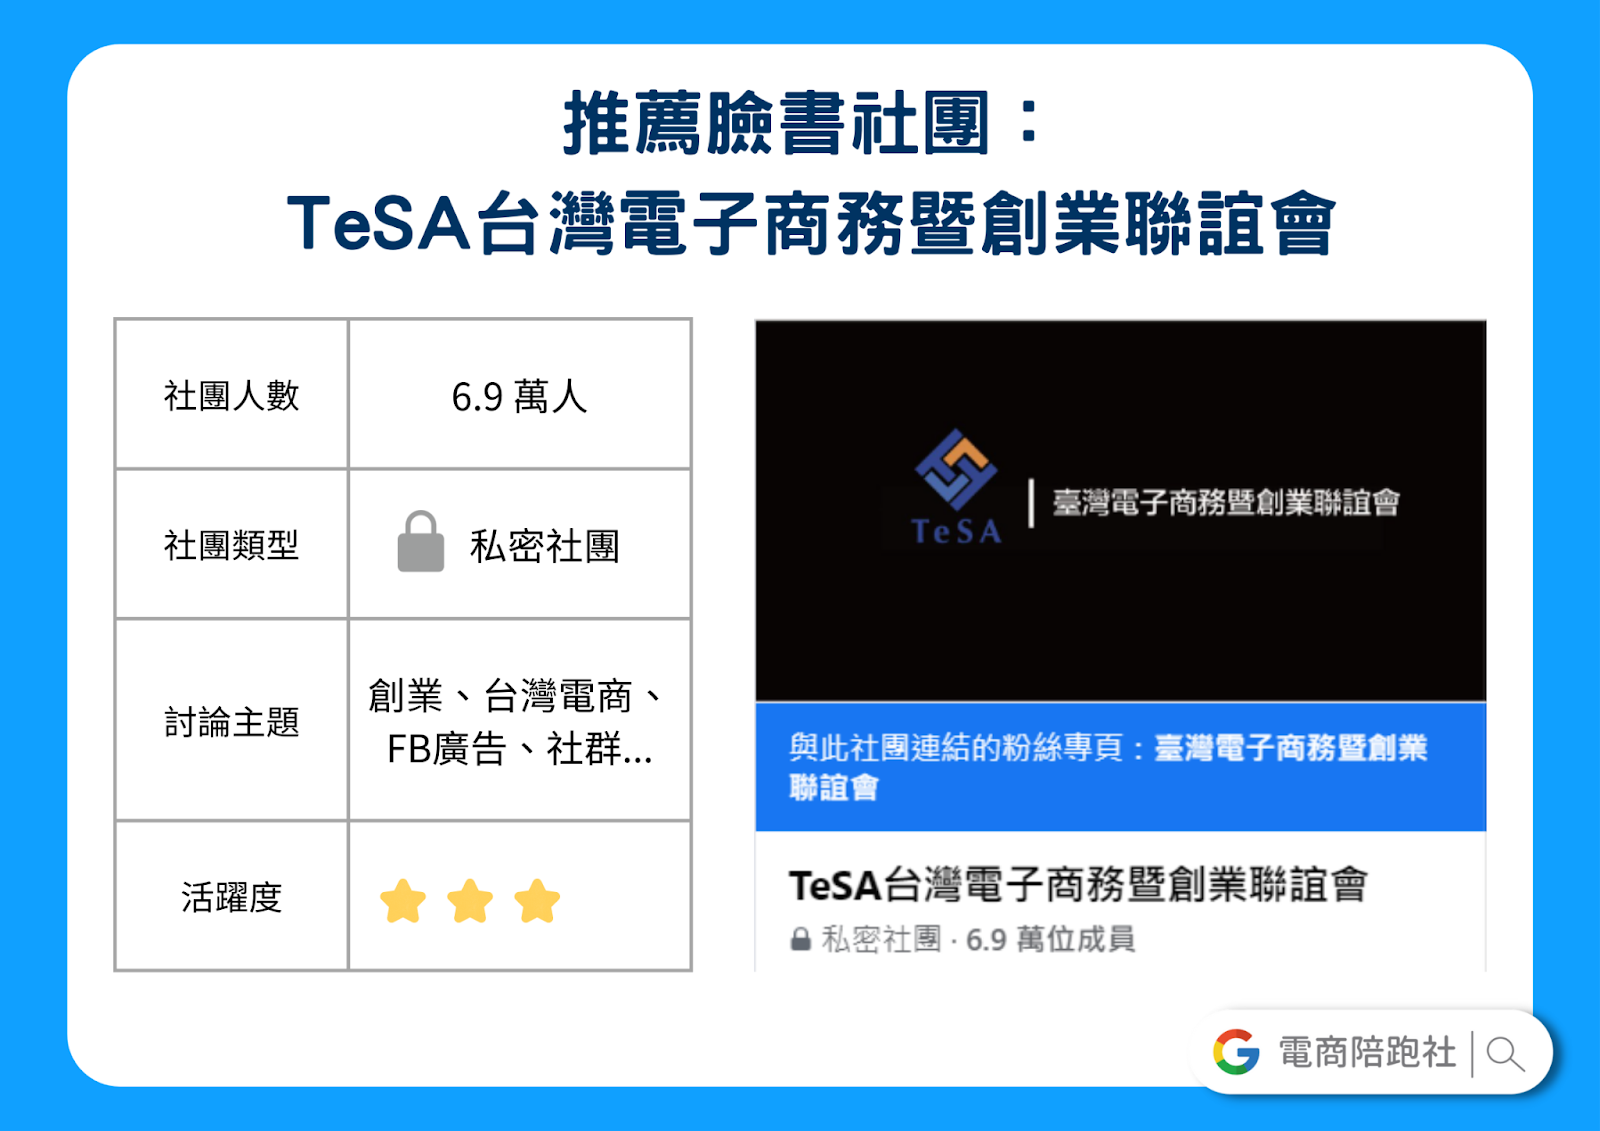 電商經營類臉書社團-TeSA  臺灣電子商務創業聯誼會